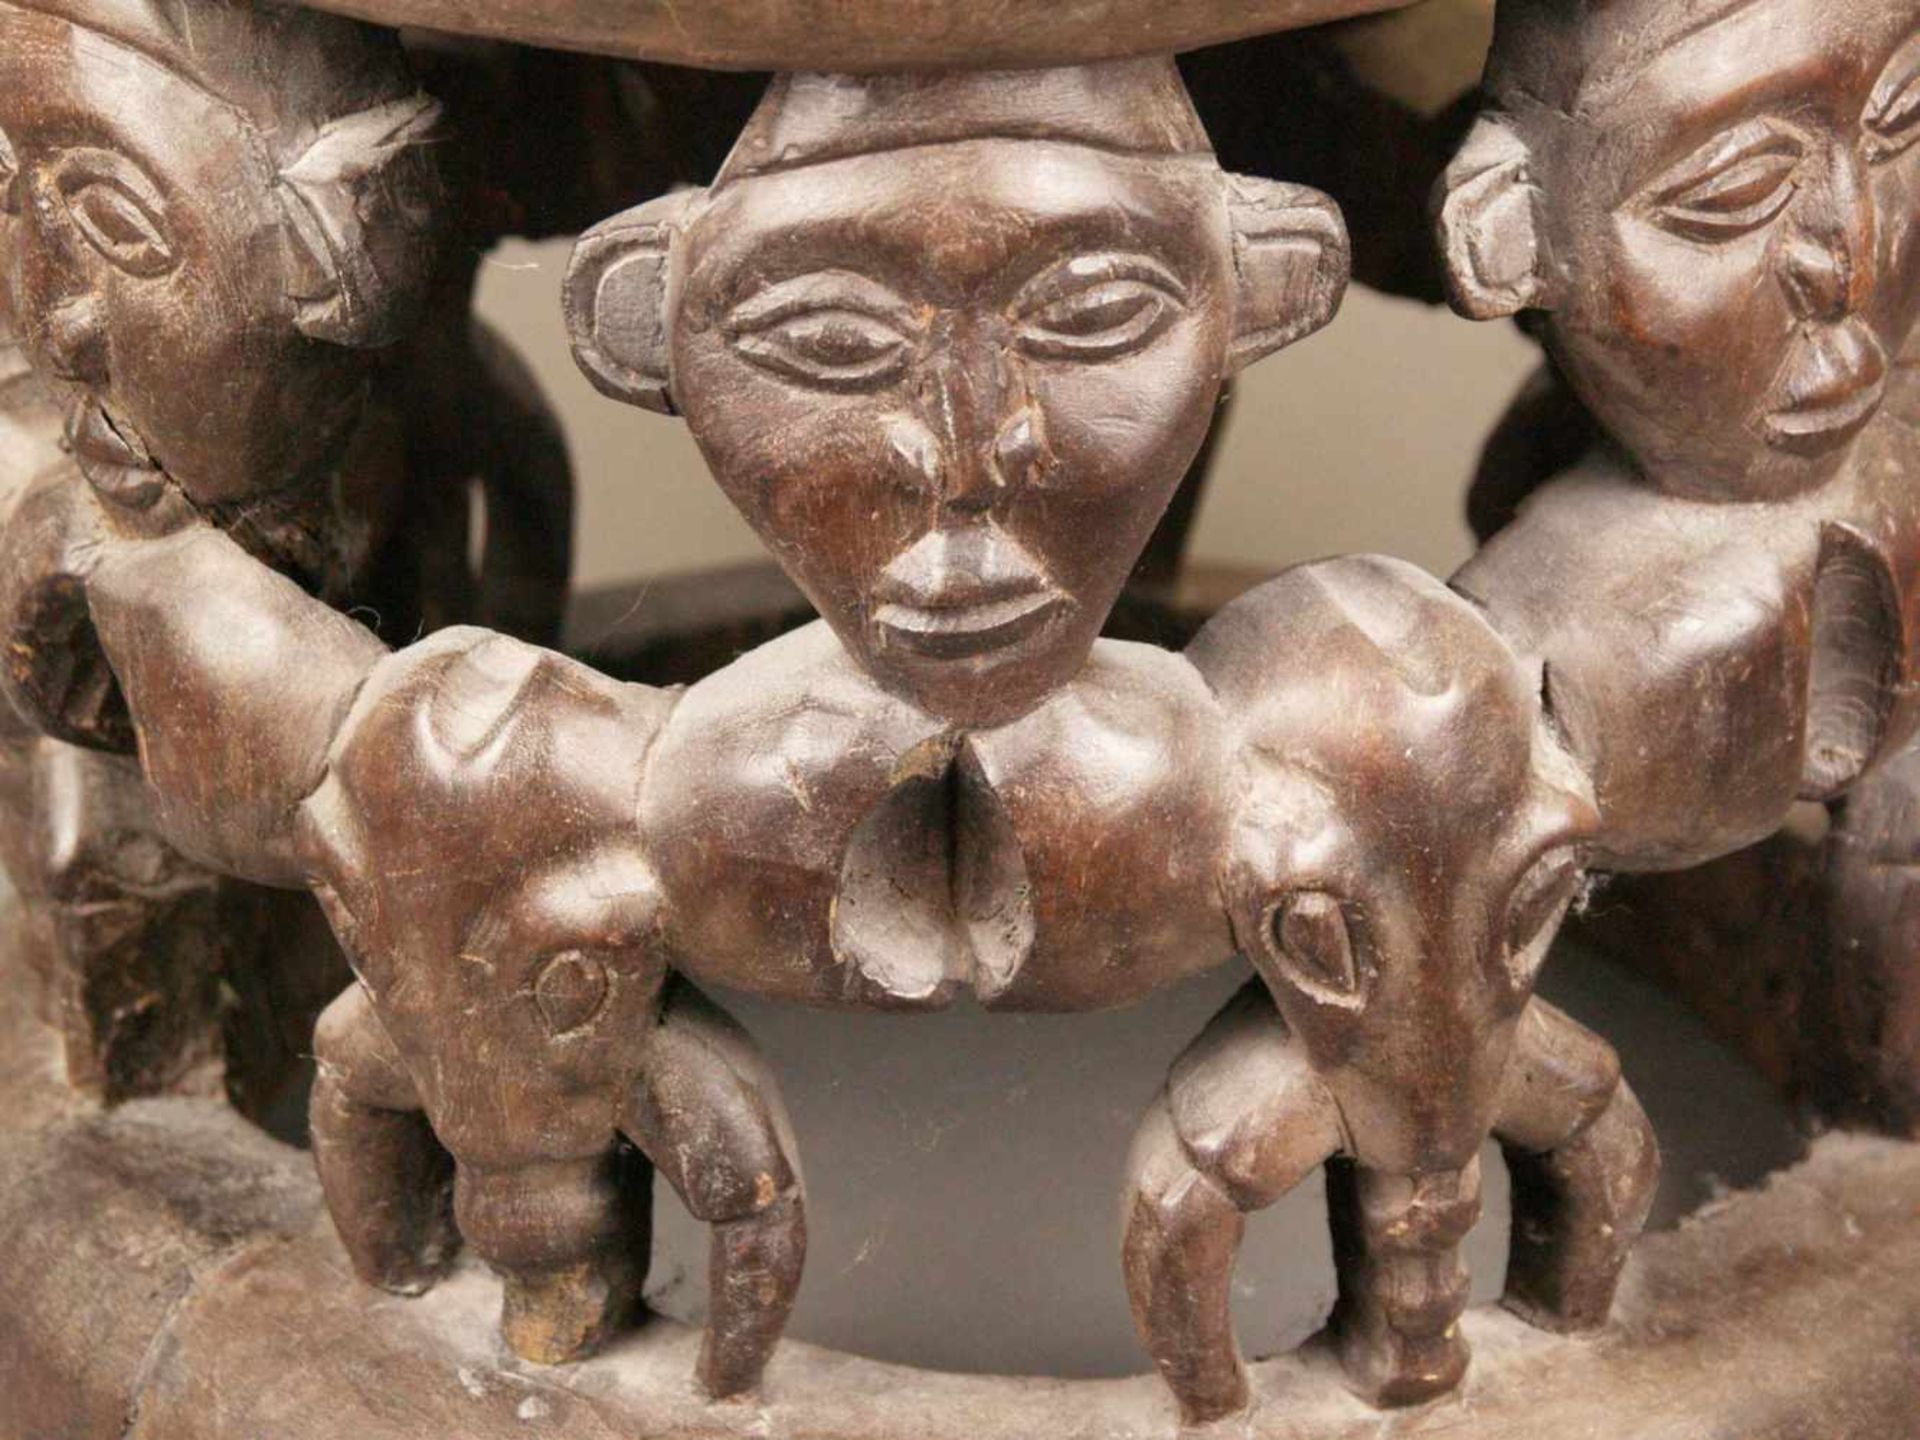 Hocker - Kamerun, braunes Holz, geschnitzt, runde Sitzfläche, seitlich 7 Elefantenköpfe - Bild 2 aus 7